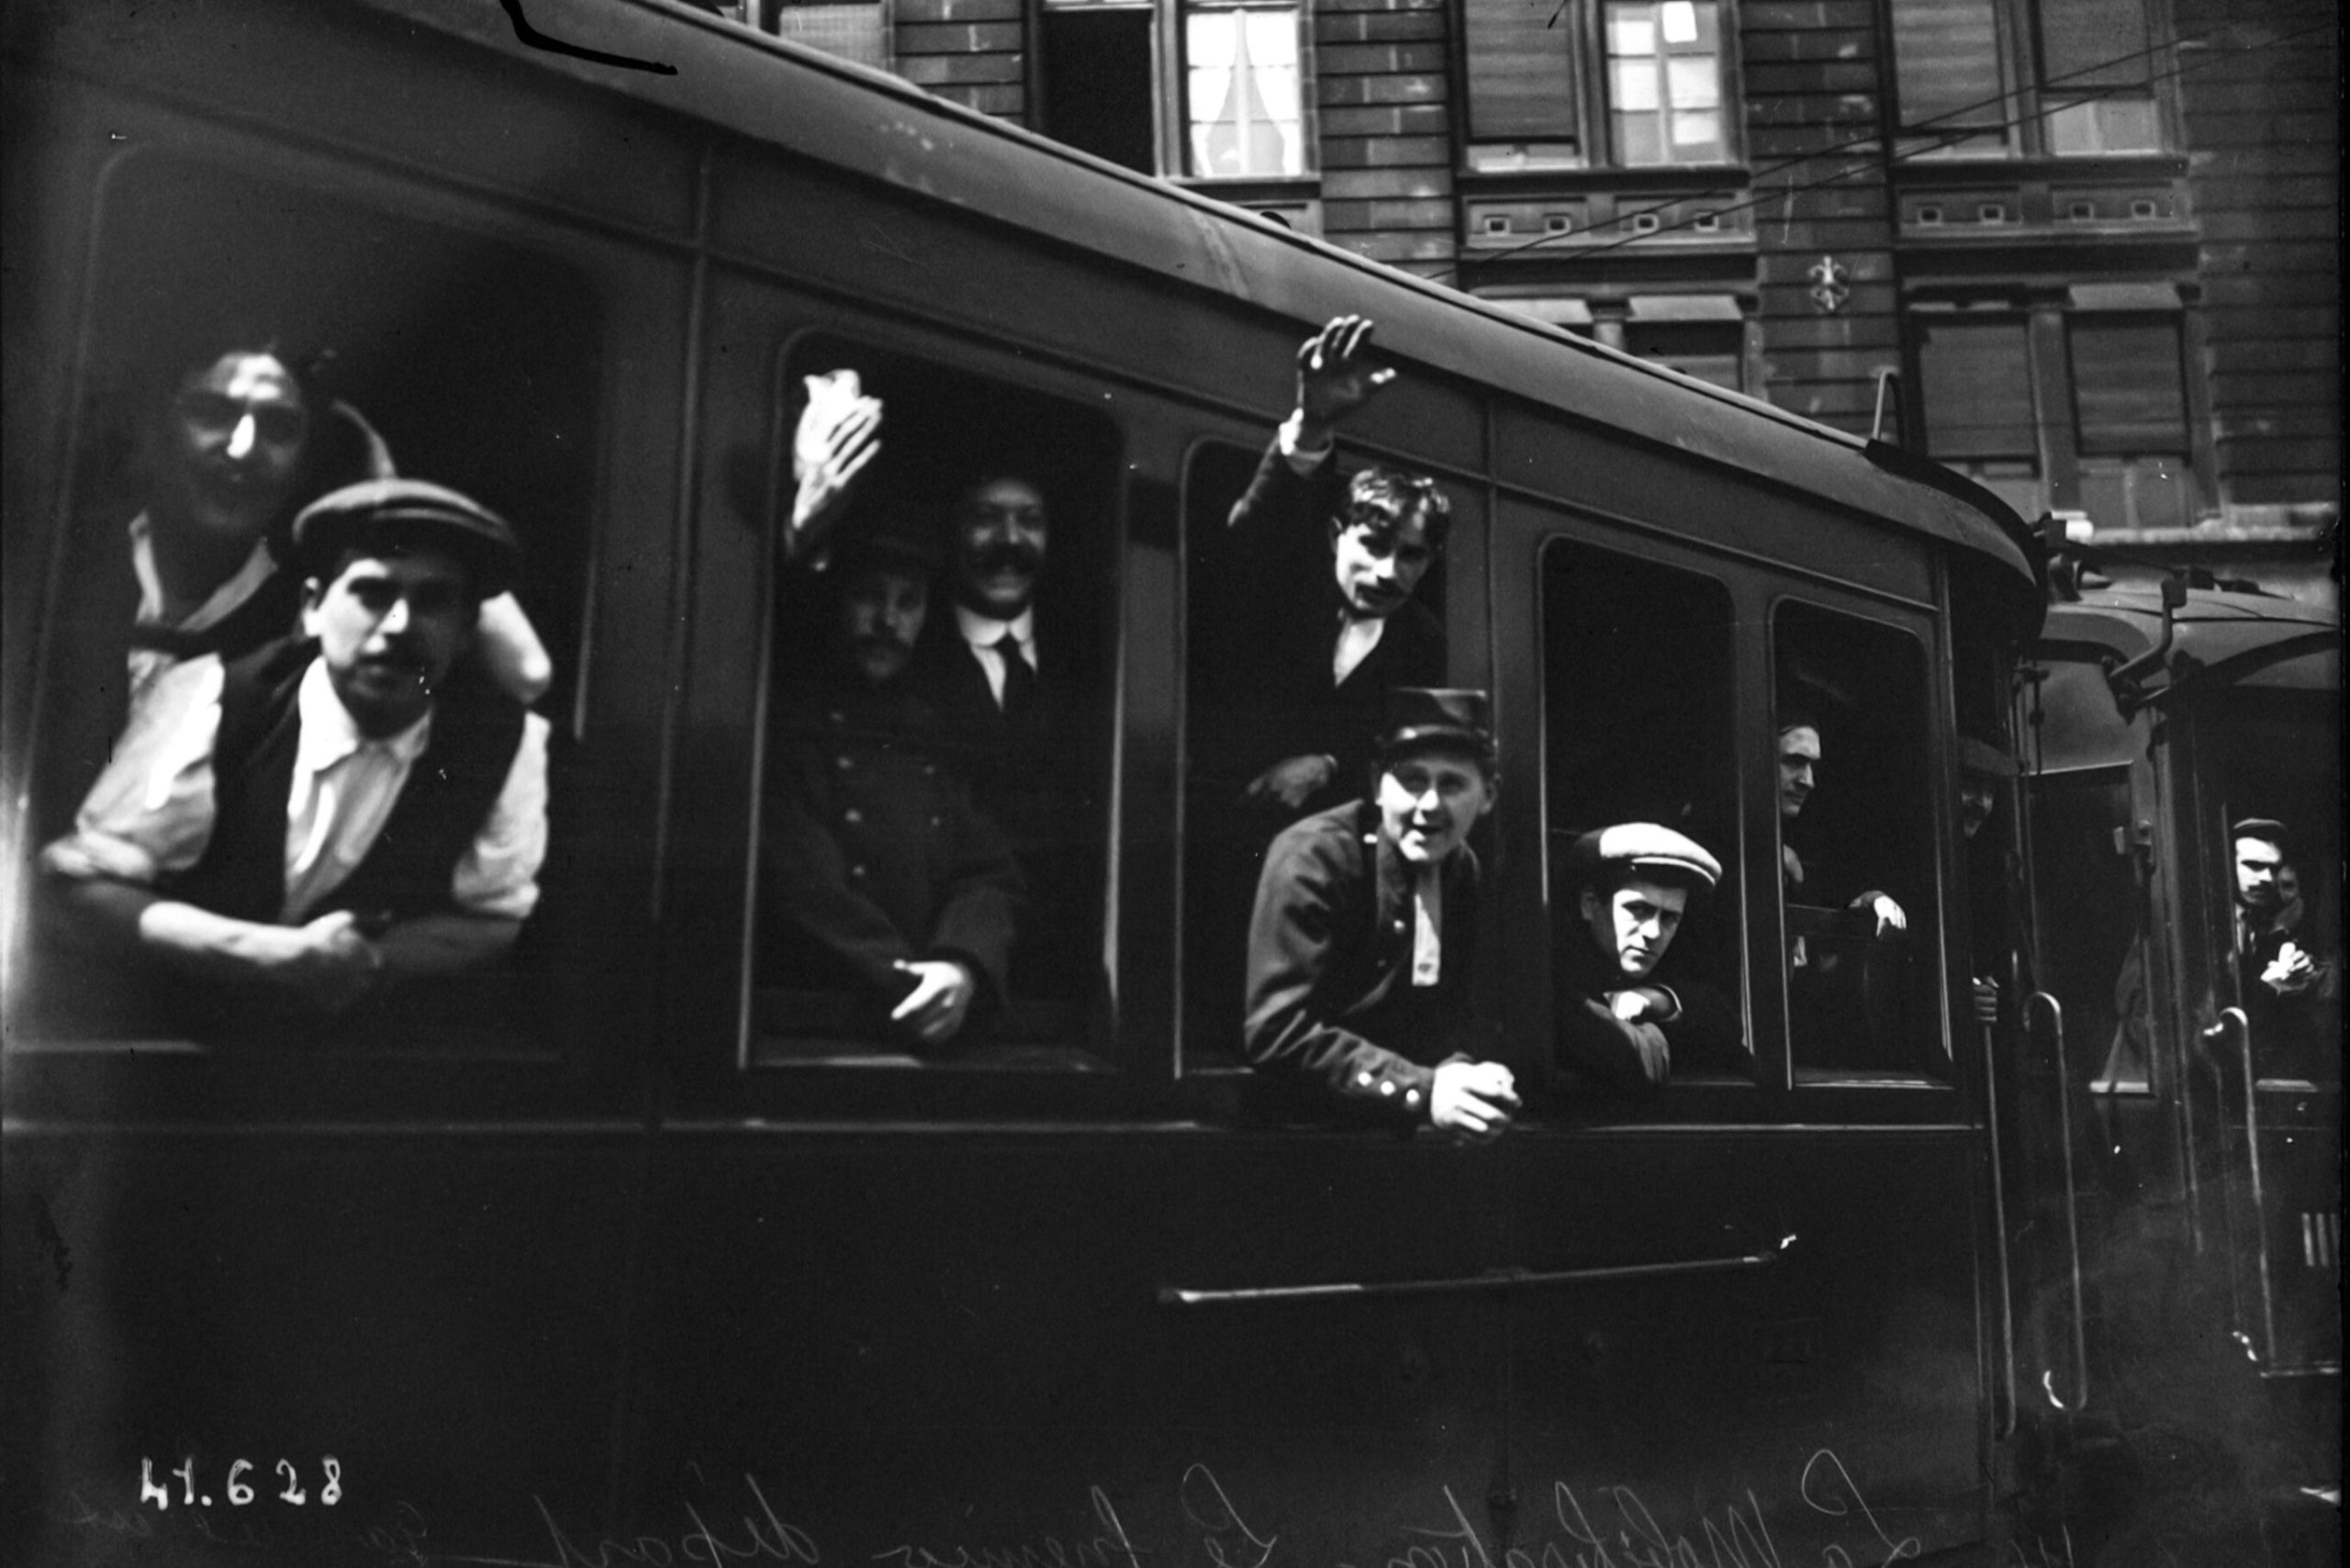 Train de mobilisés 02 août 1914 [Public Domain via Wikimedia Commons]